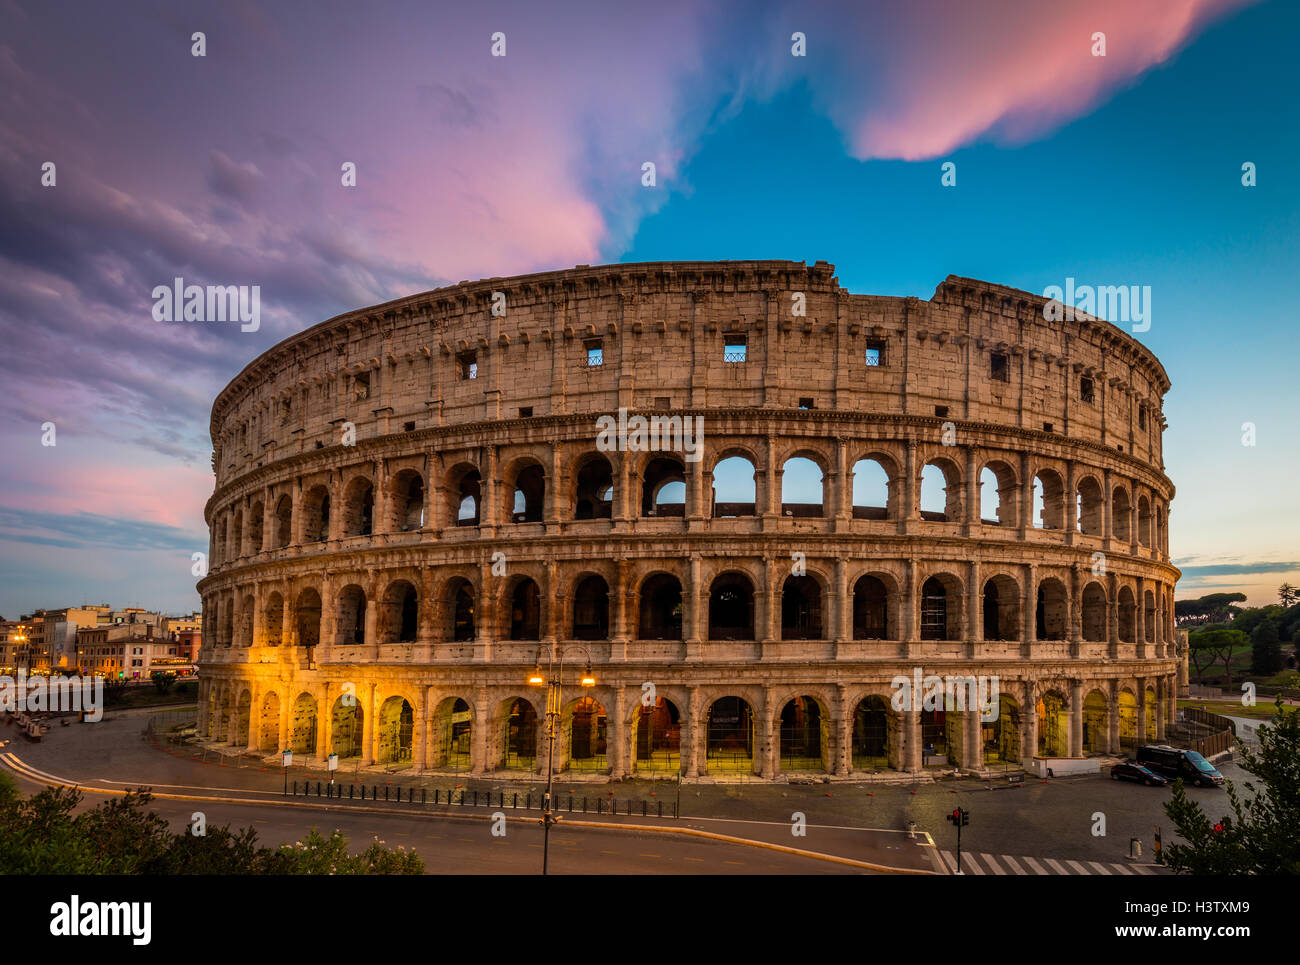 El Coliseo, el anfiteatro más grande en el mundo, es un anfiteatro elíptico en el centro de la ciudad de Roma, Italia Foto de stock